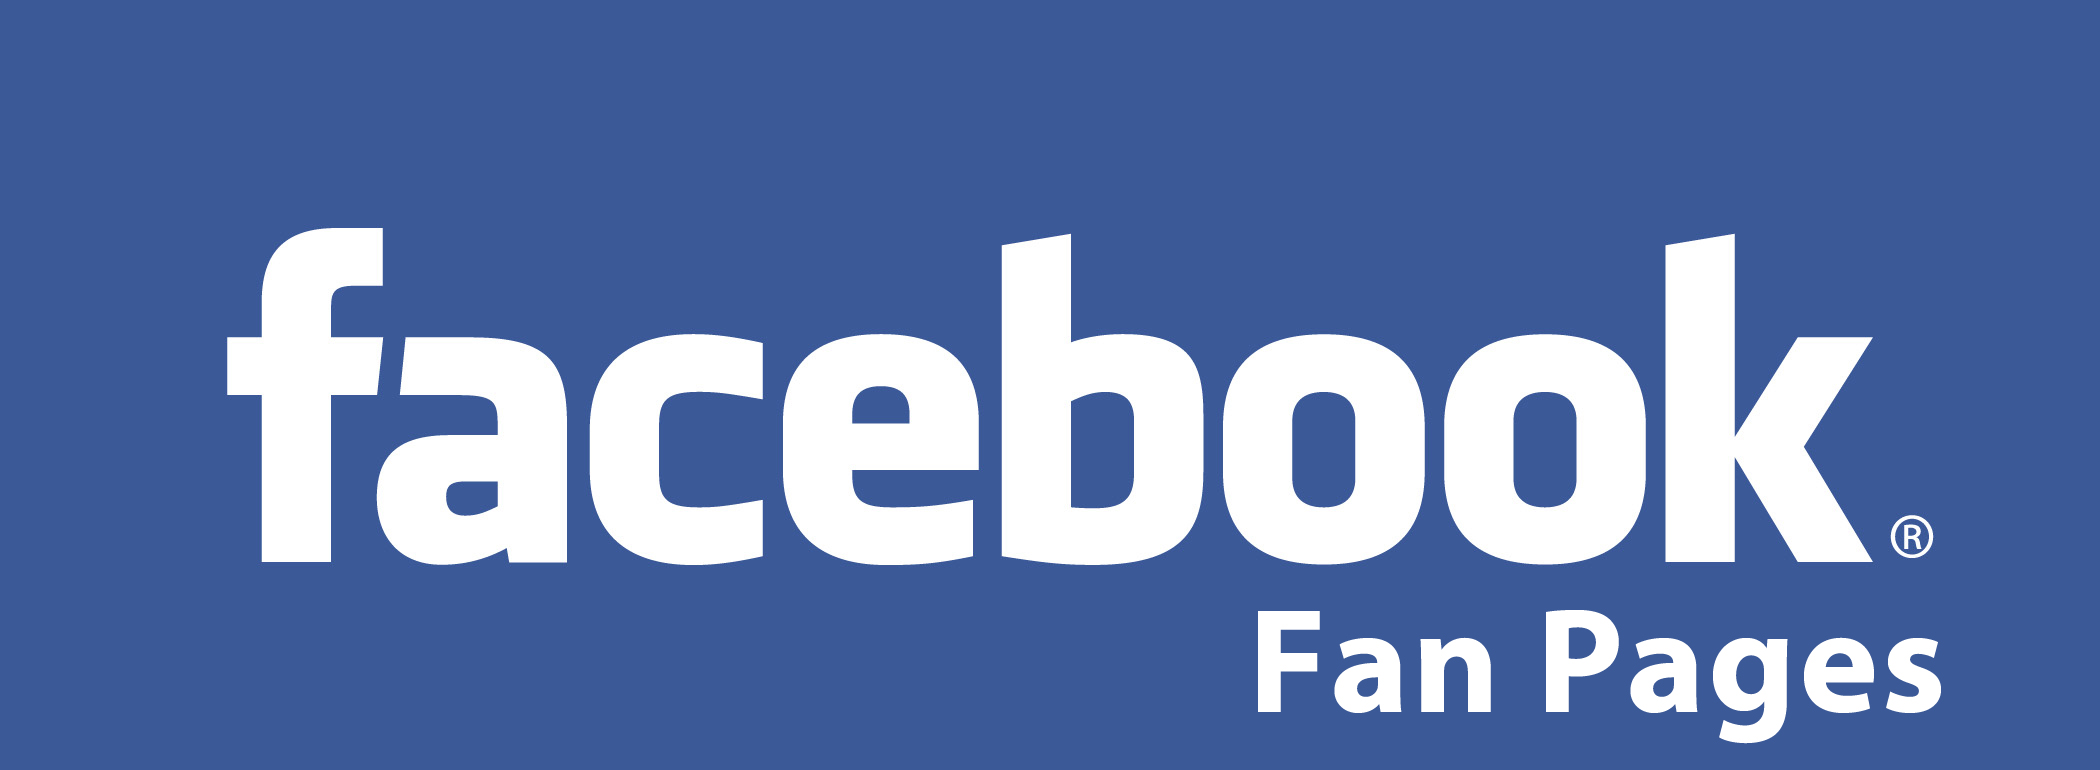 #SinergioLAB: Como usar facebook para promocionar un negocio (I): fanpage